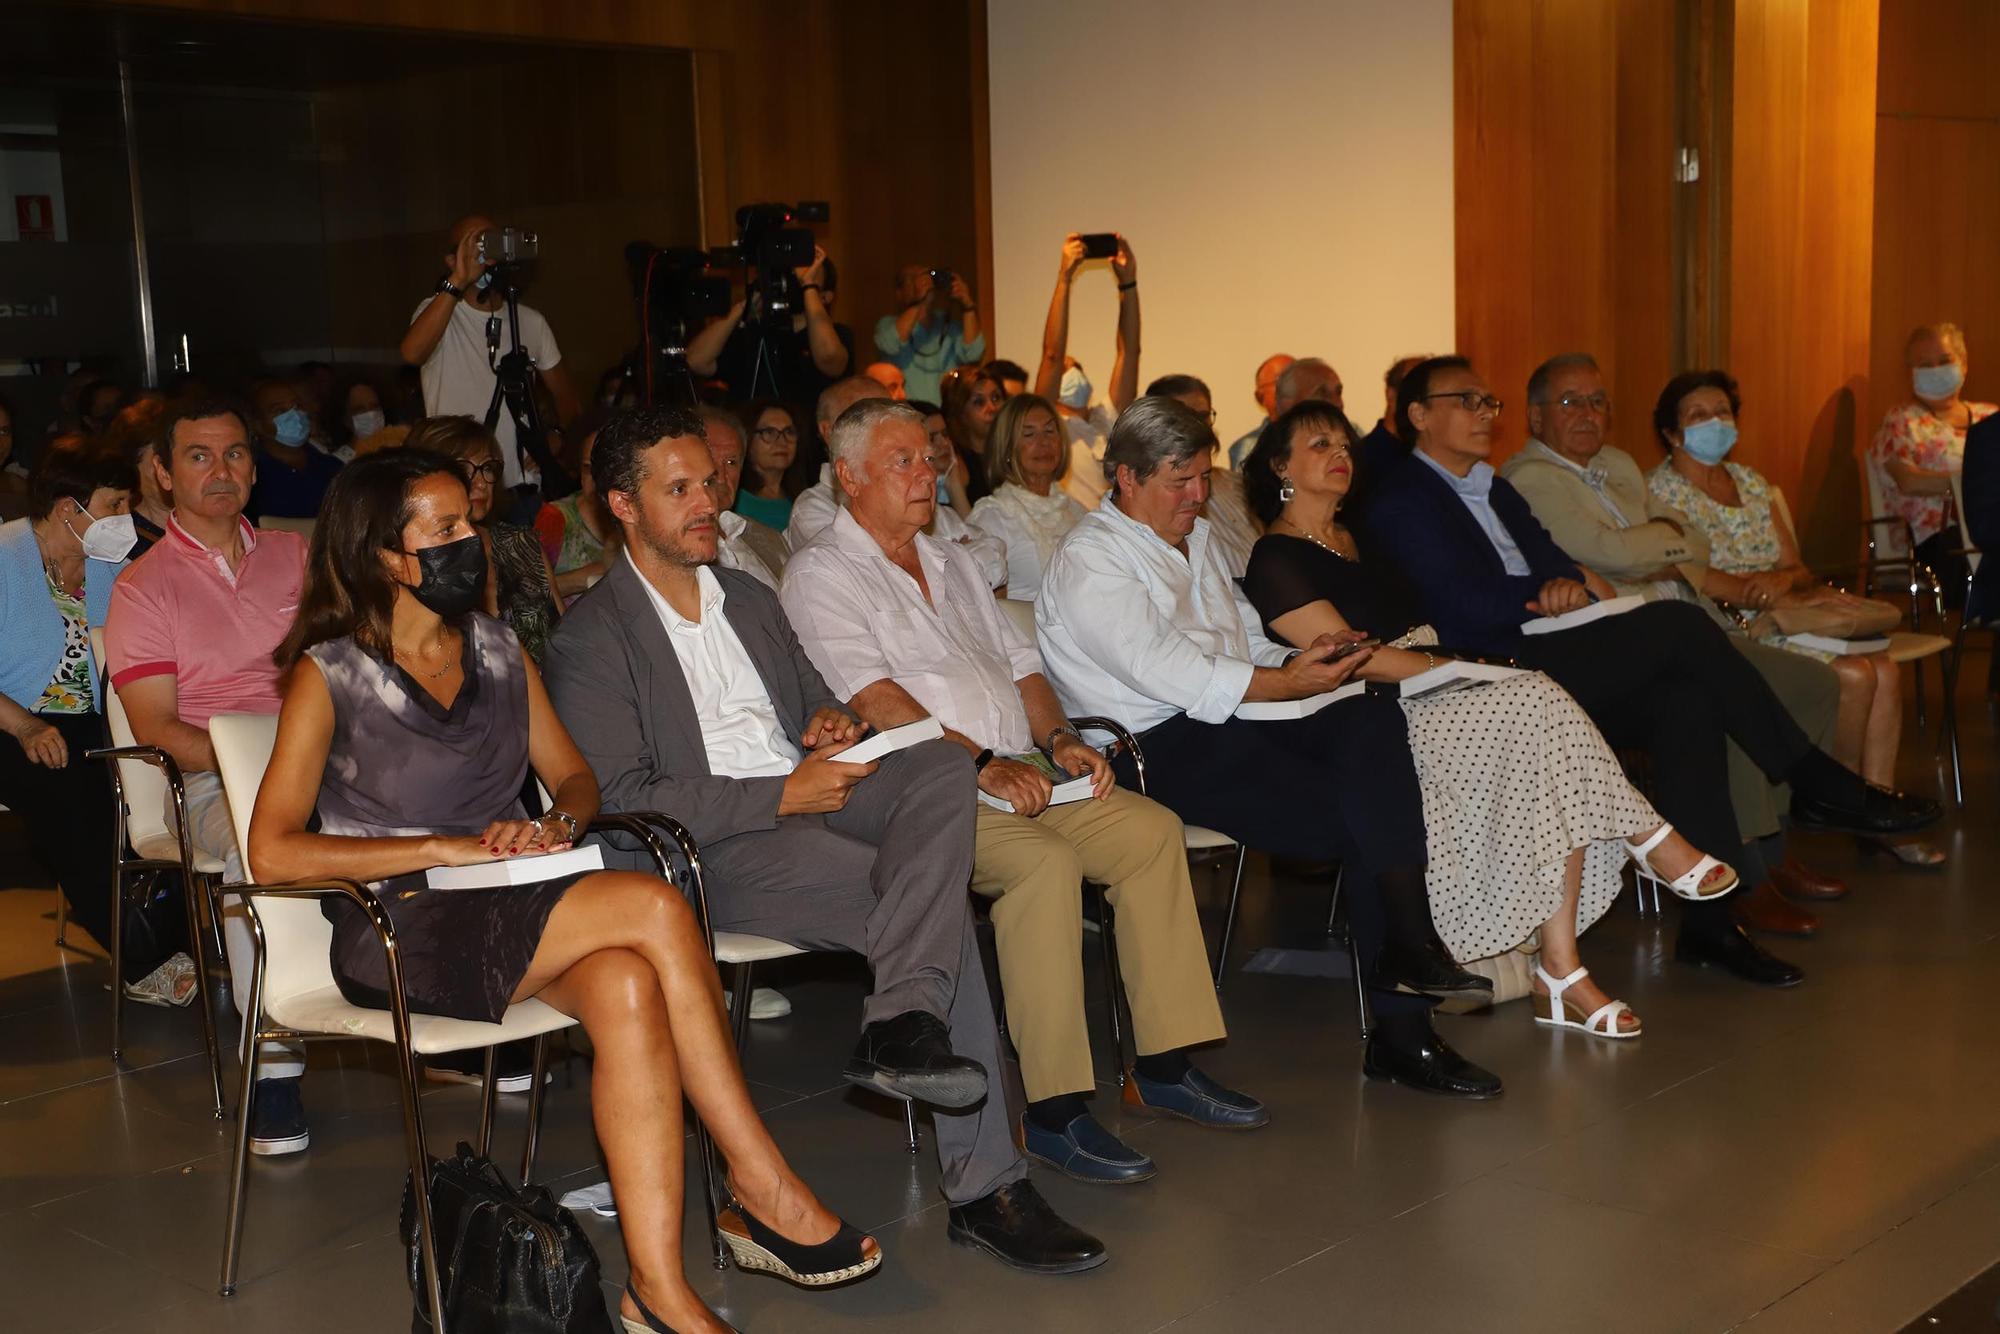 Mayor Zaragoza propone en Córdoba ‘Inventar el futuro’